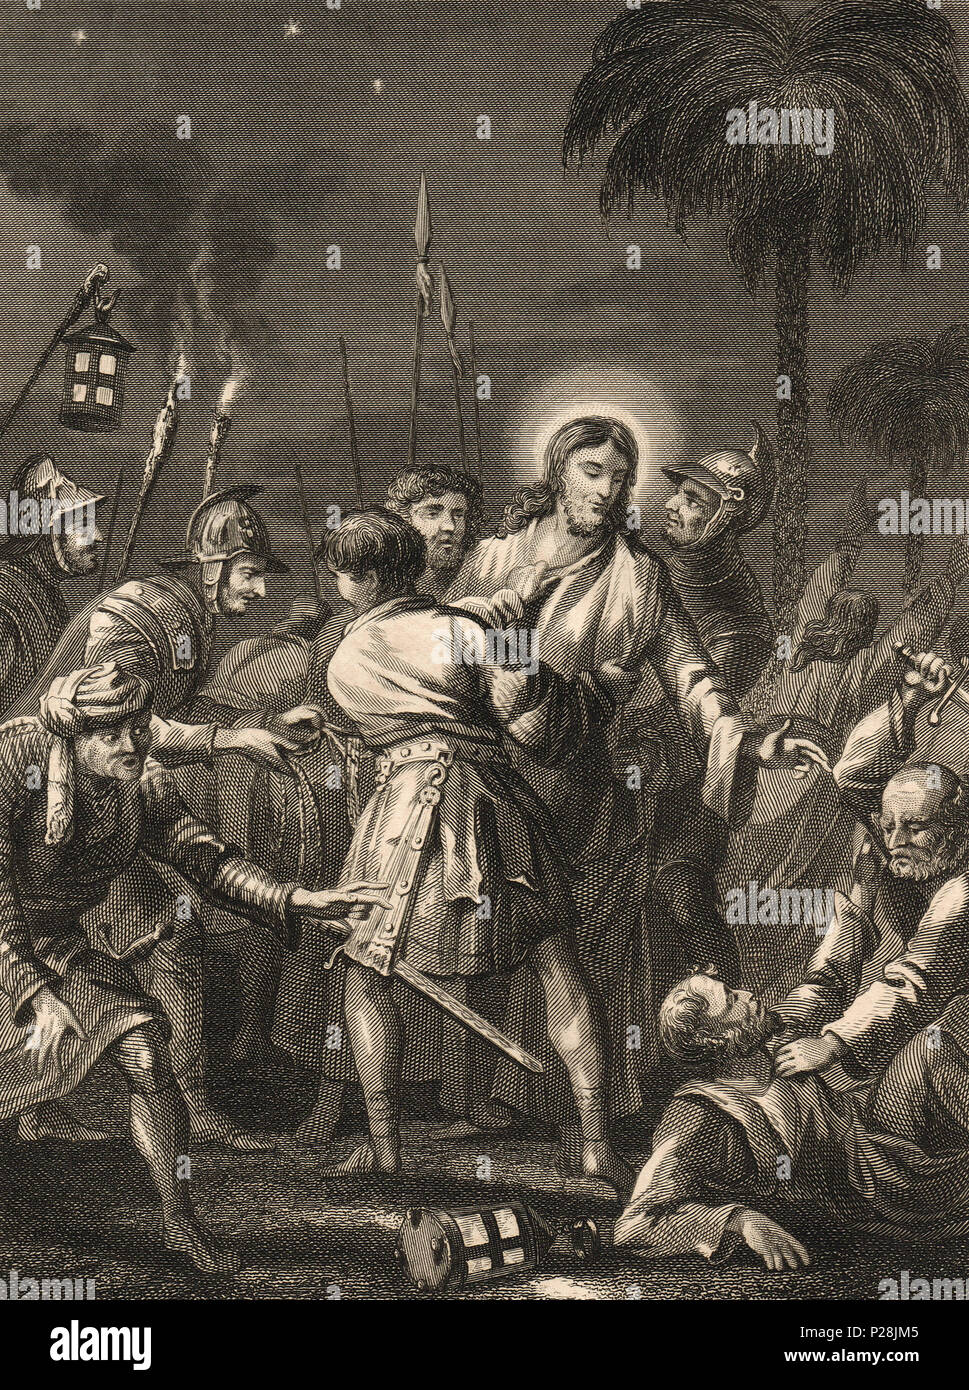 La trahison de Jésus par Judas Iscariote, illustration du xixe siècle Banque D'Images